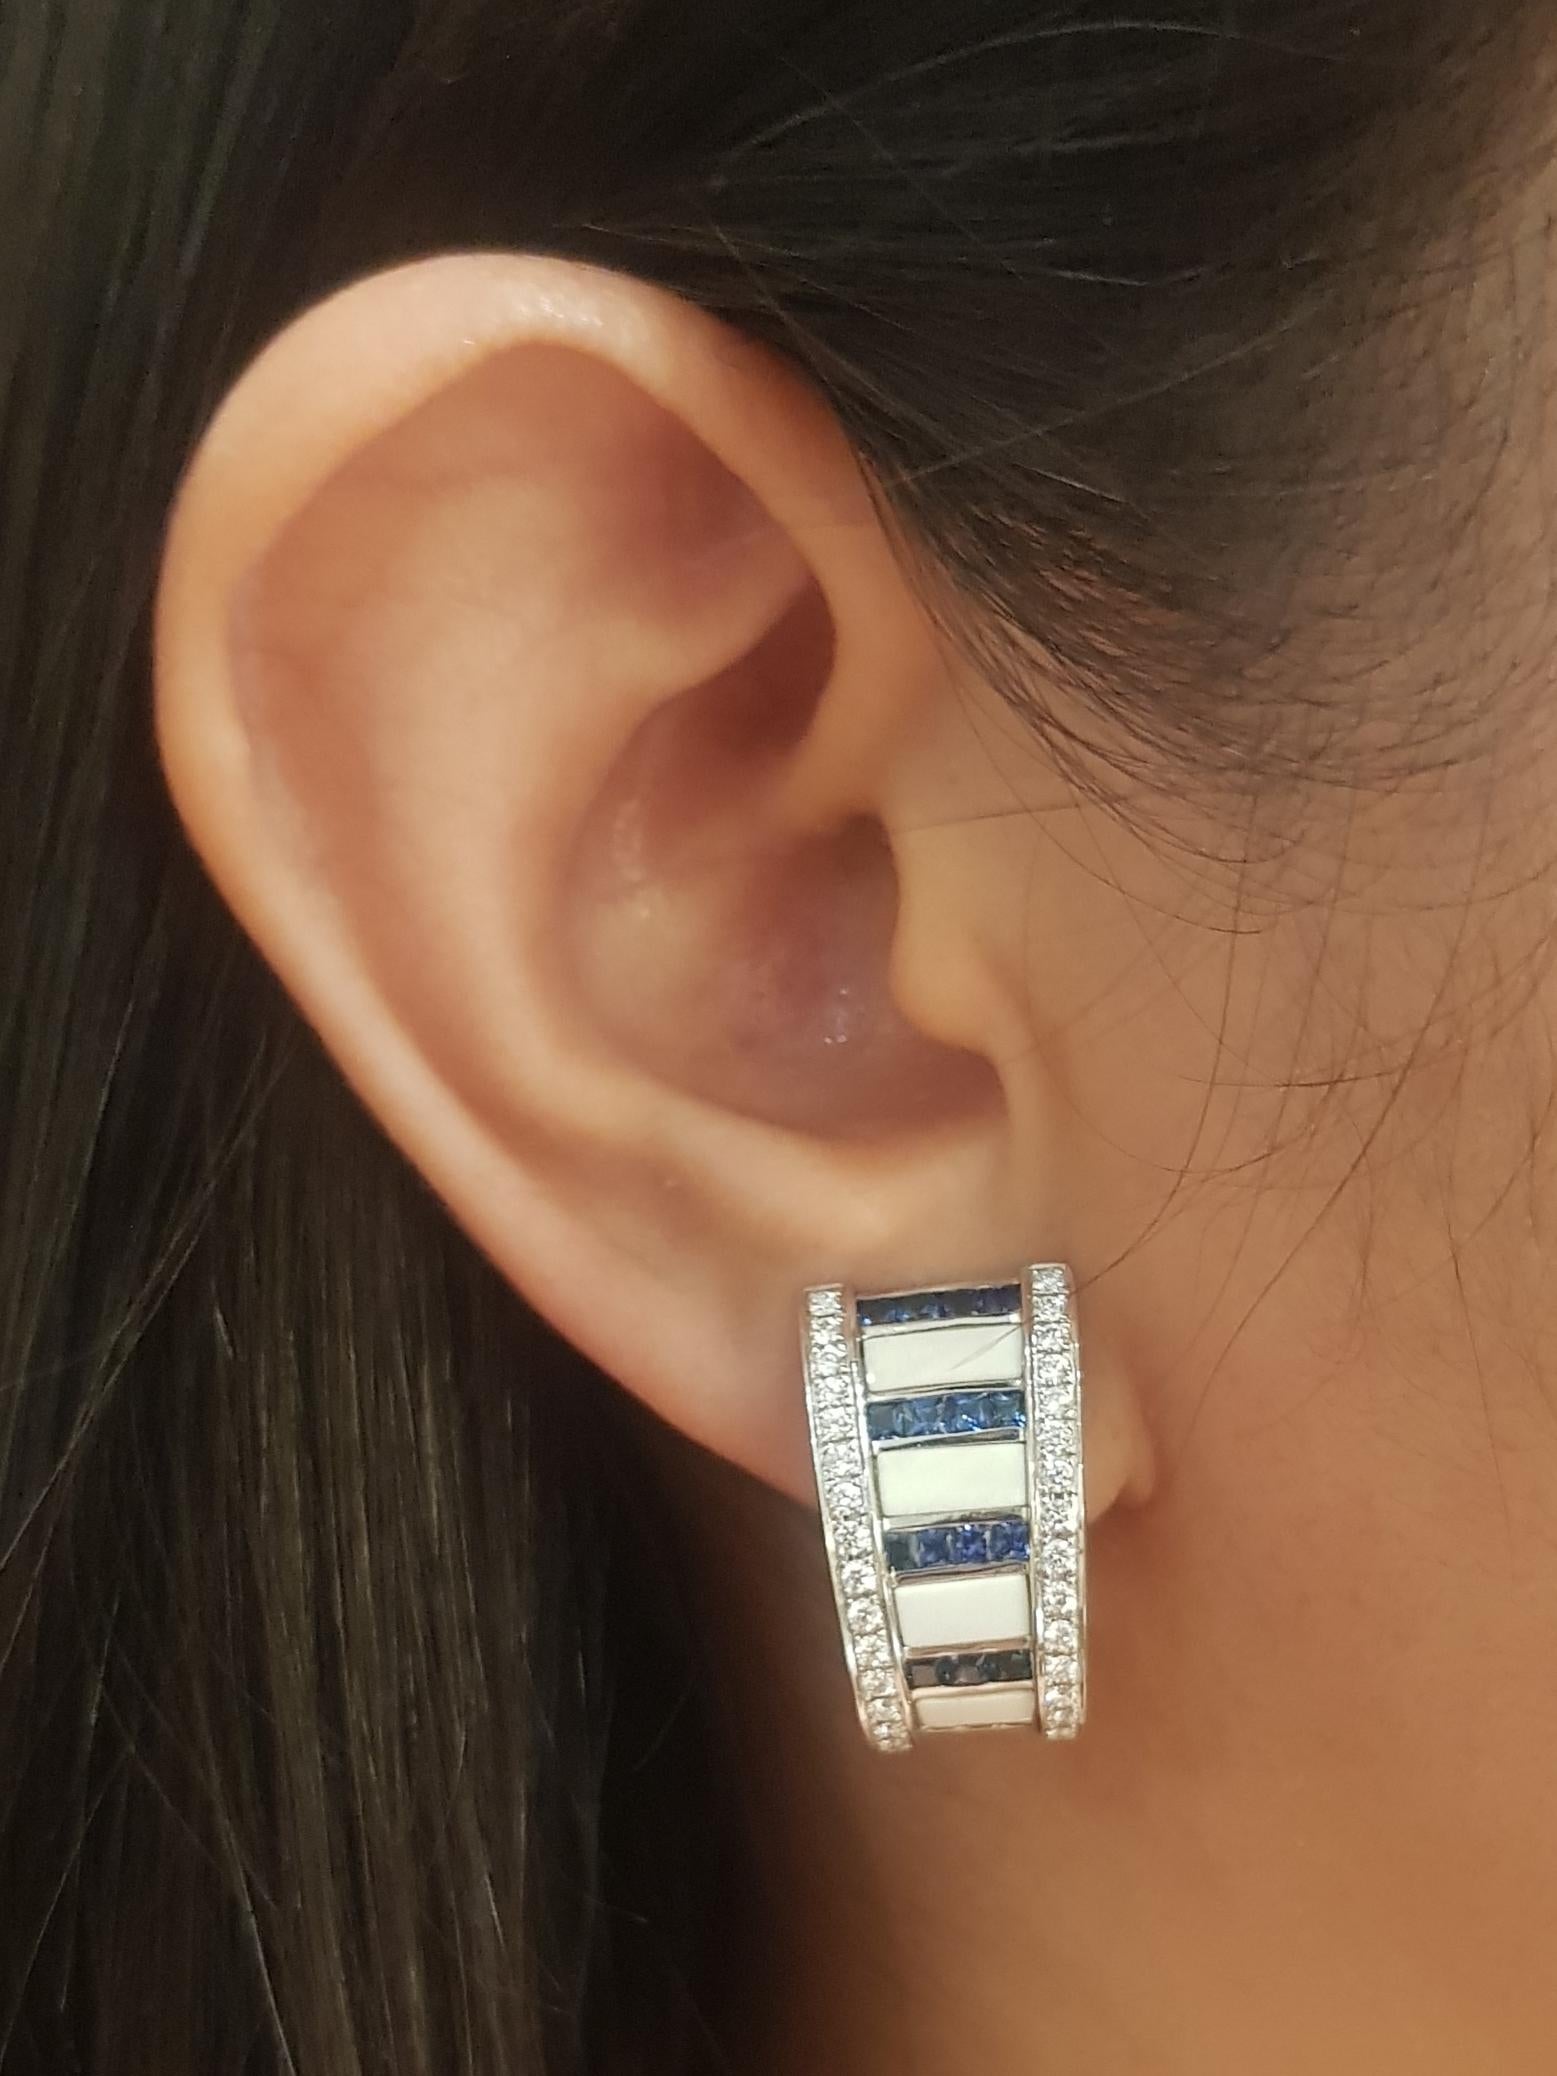 Boucles d'oreilles en Agate blanche, Saphir bleu 1.95 carats et Diamant 0.81 carat montées sur or blanc 18K

Largeur : 1.2 cm 
Longueur : 2.2 cm
Poids total : 16,96 grammes

